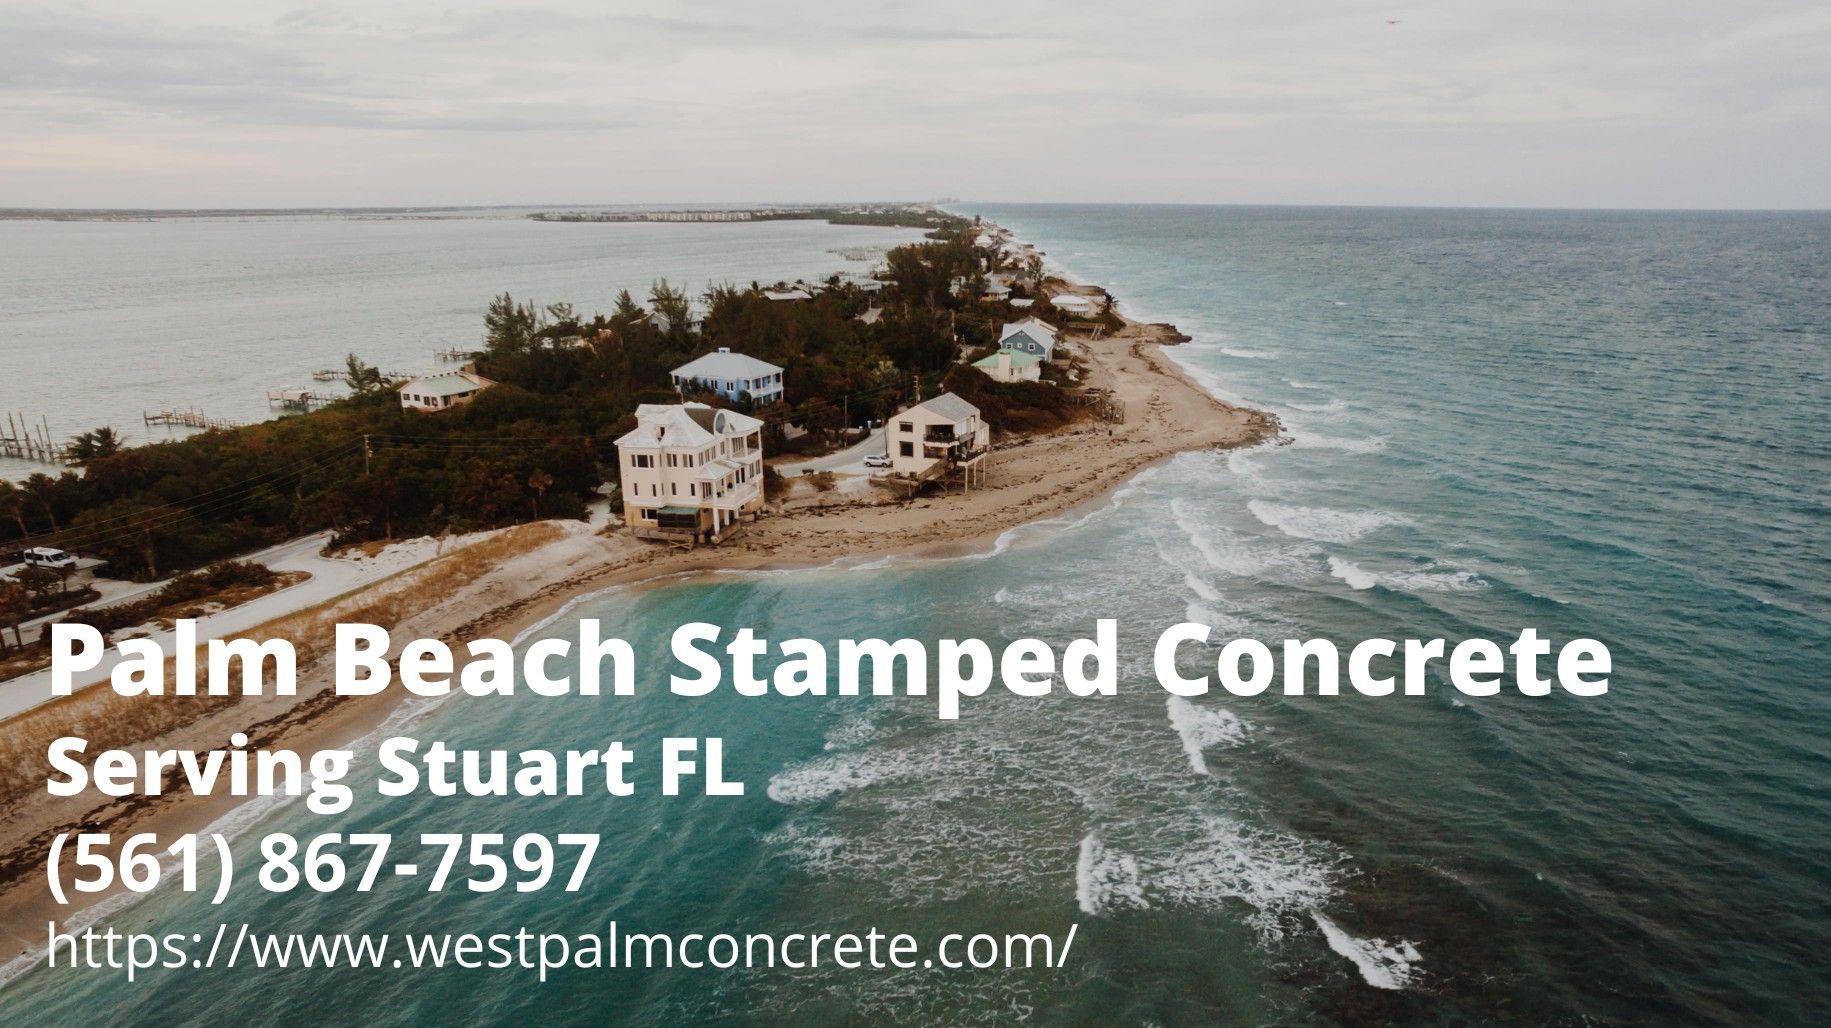 Stuart Beach. Text by Palm Beach Stamped Concrete - a decorative concrete company serving Stuart FL